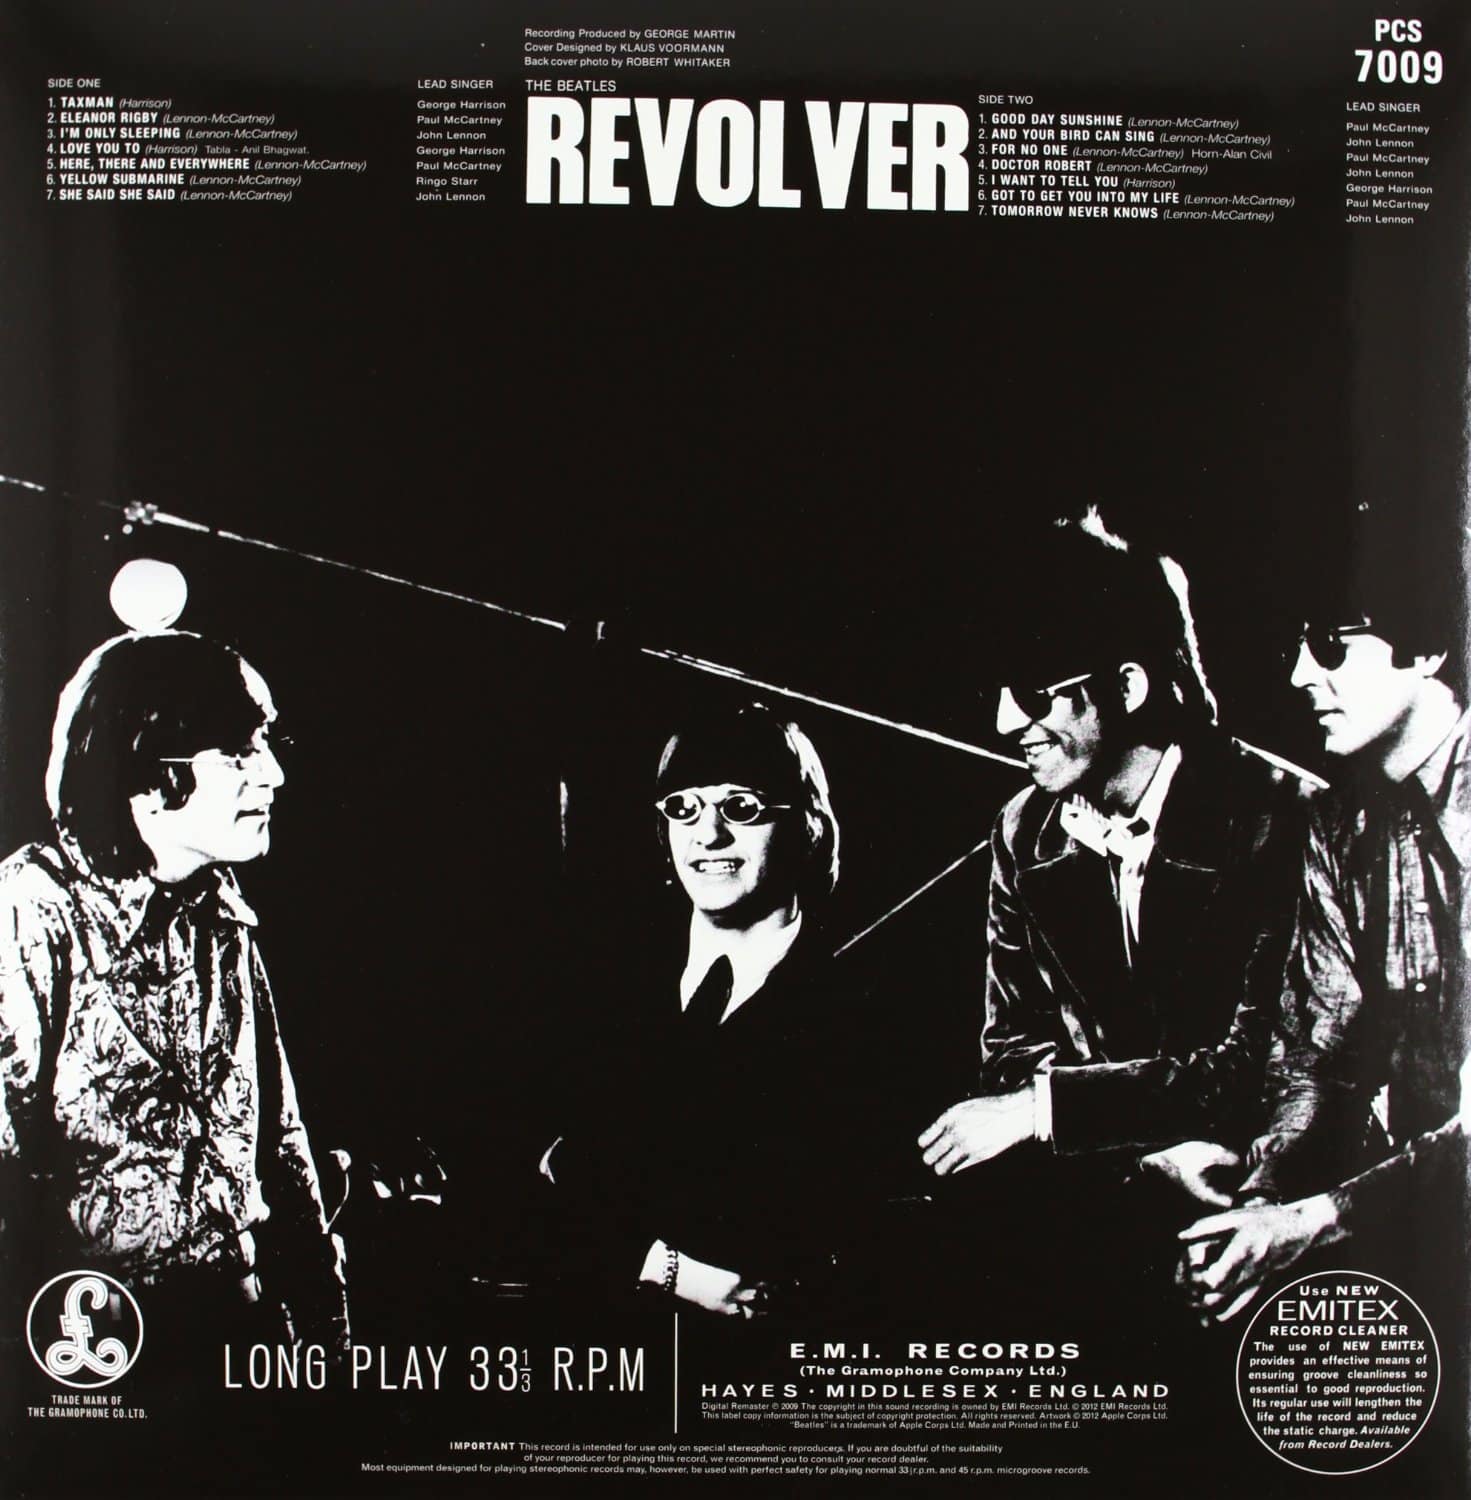 original revolver album cover